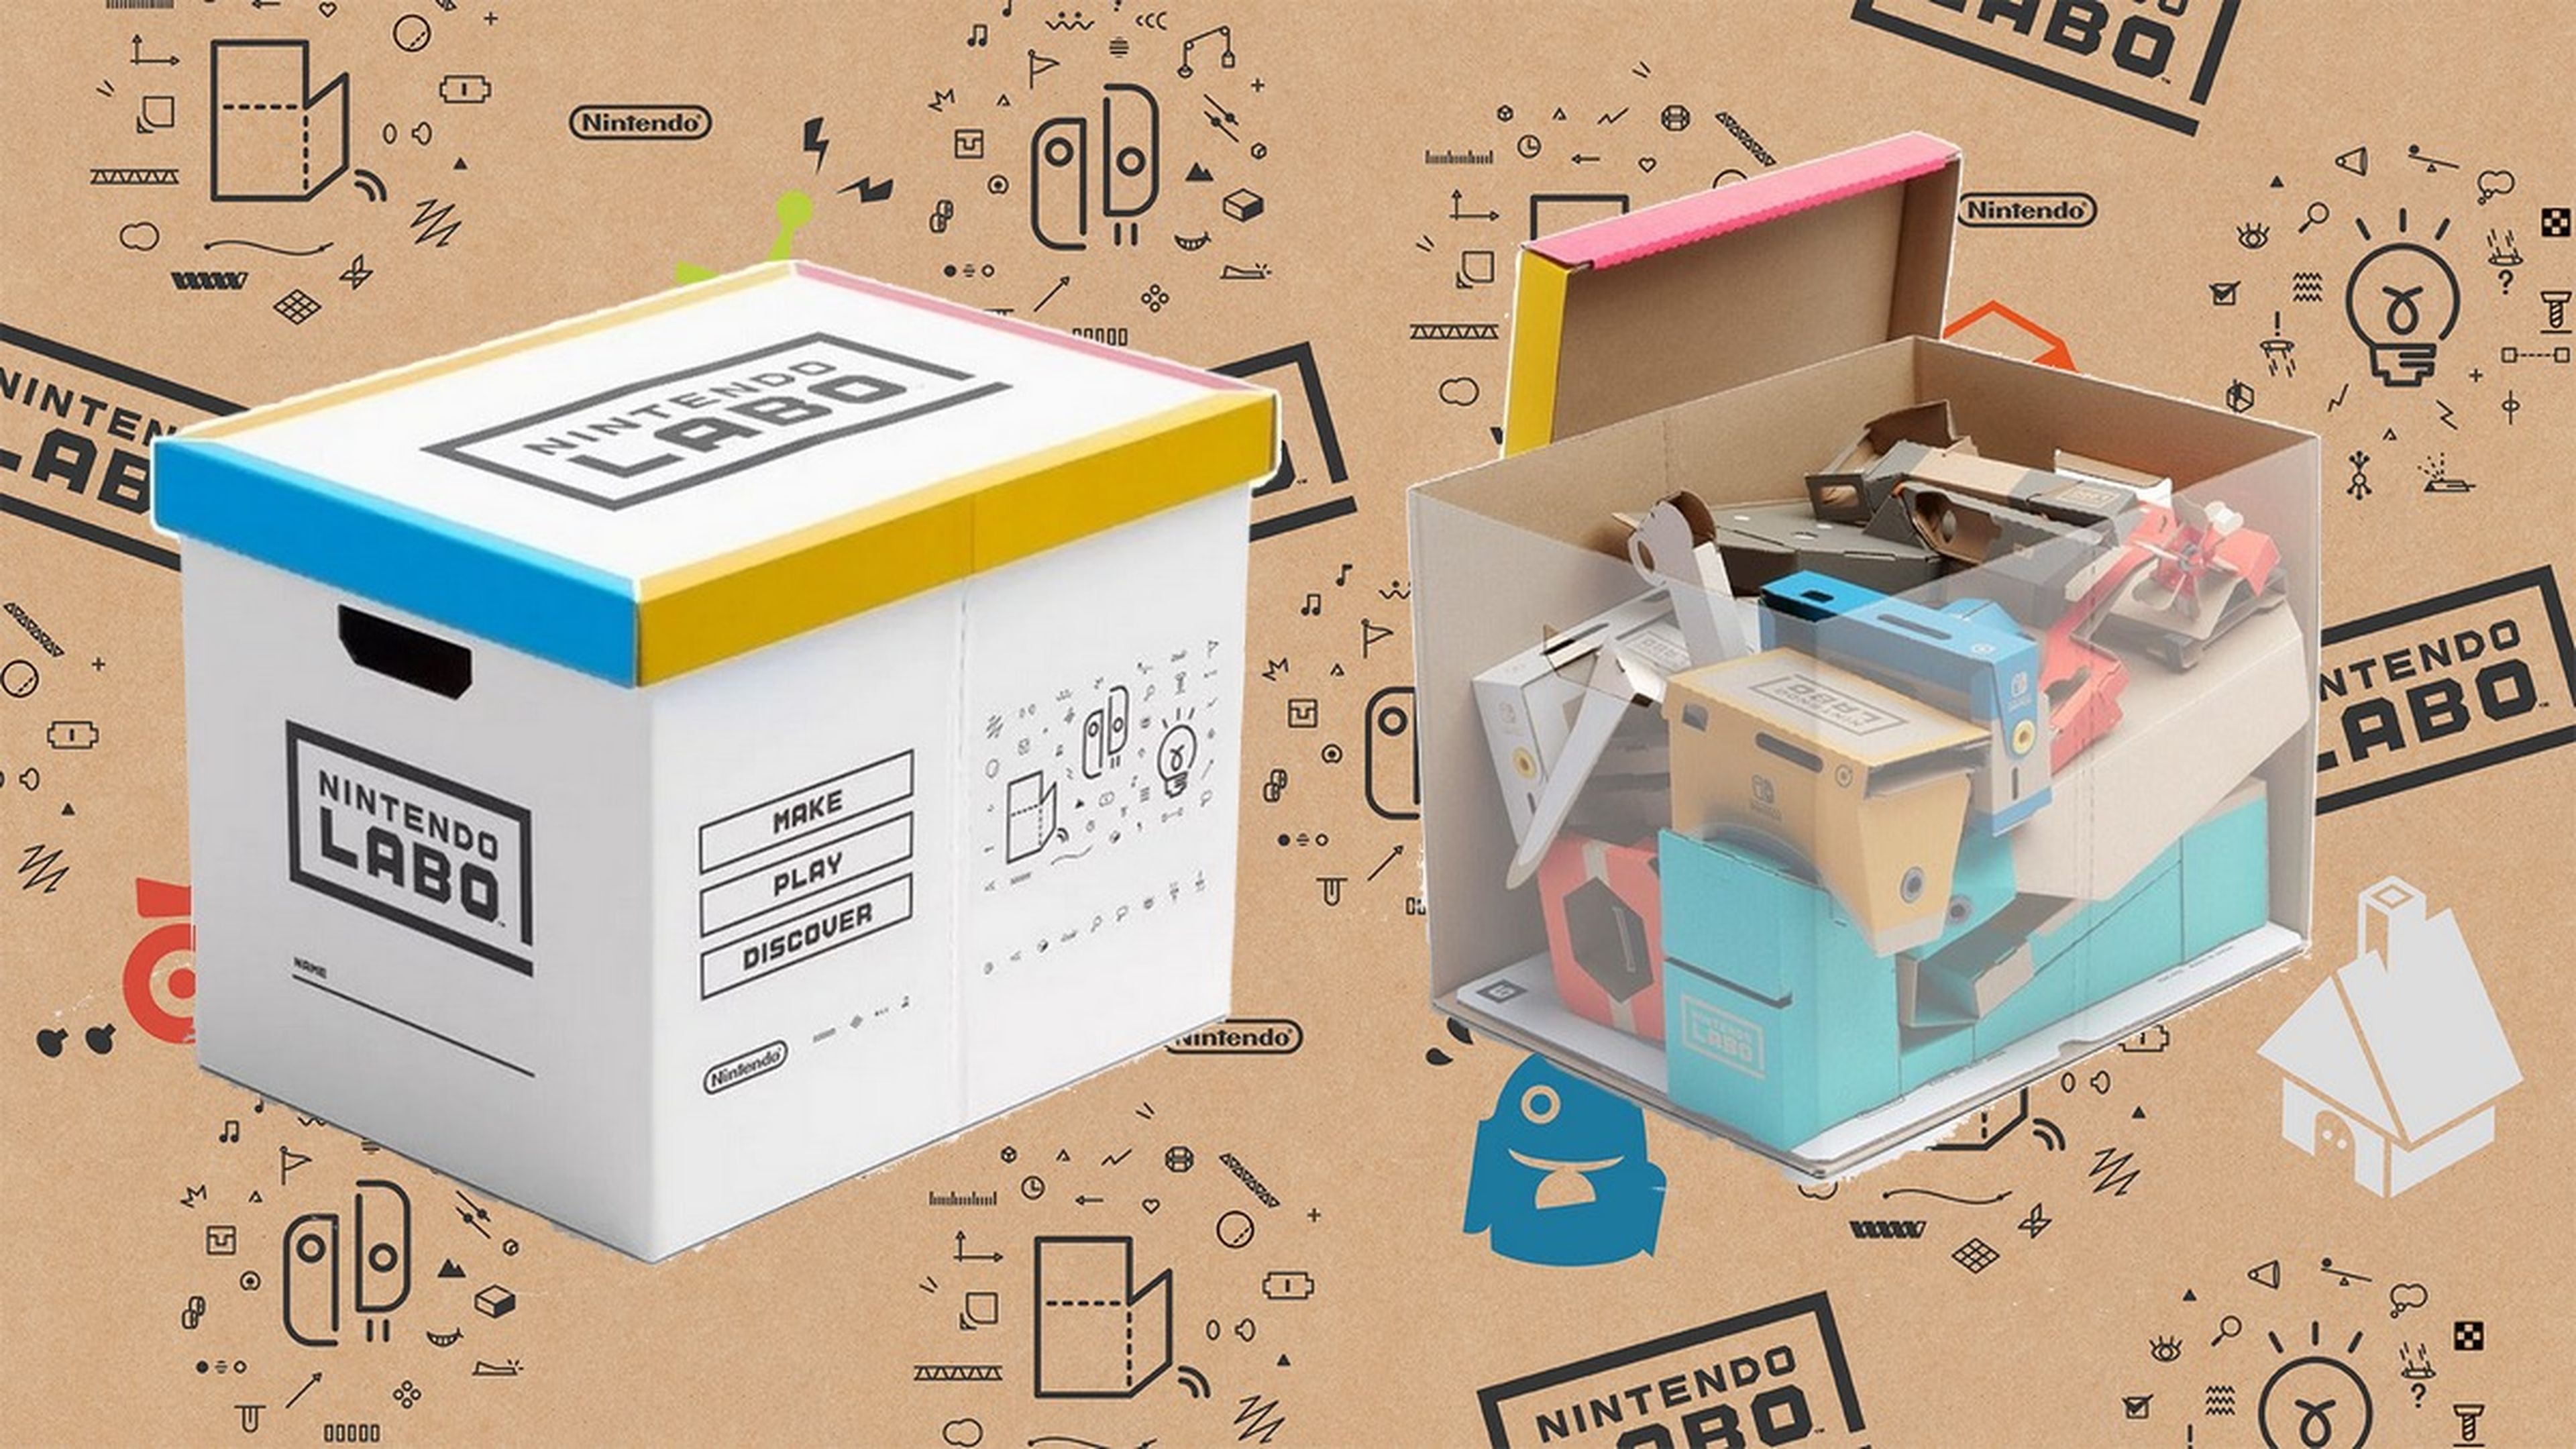 Pasivo Melbourne Cerdo El nuevo producto de Nintendo es... una caja de cartón vacía | Computer Hoy